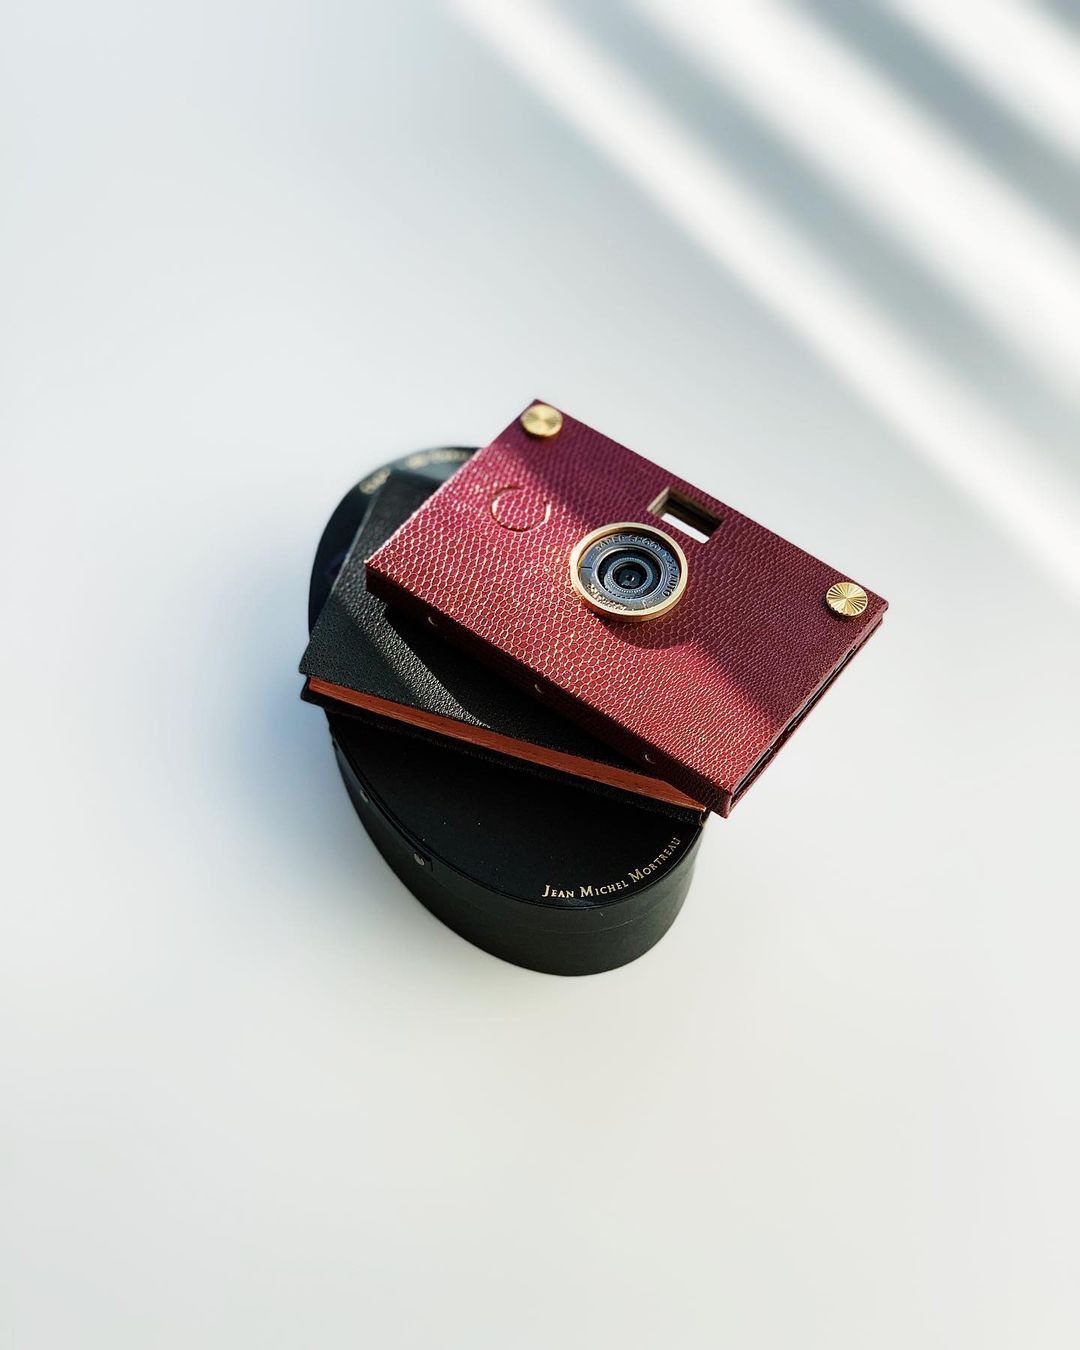 Chiếc máy ảnh Paper Shoot nhỏ gọn cho trải nghiệm nhiếp ảnh tối giản. Hình ảnh được chụp bởi: ...